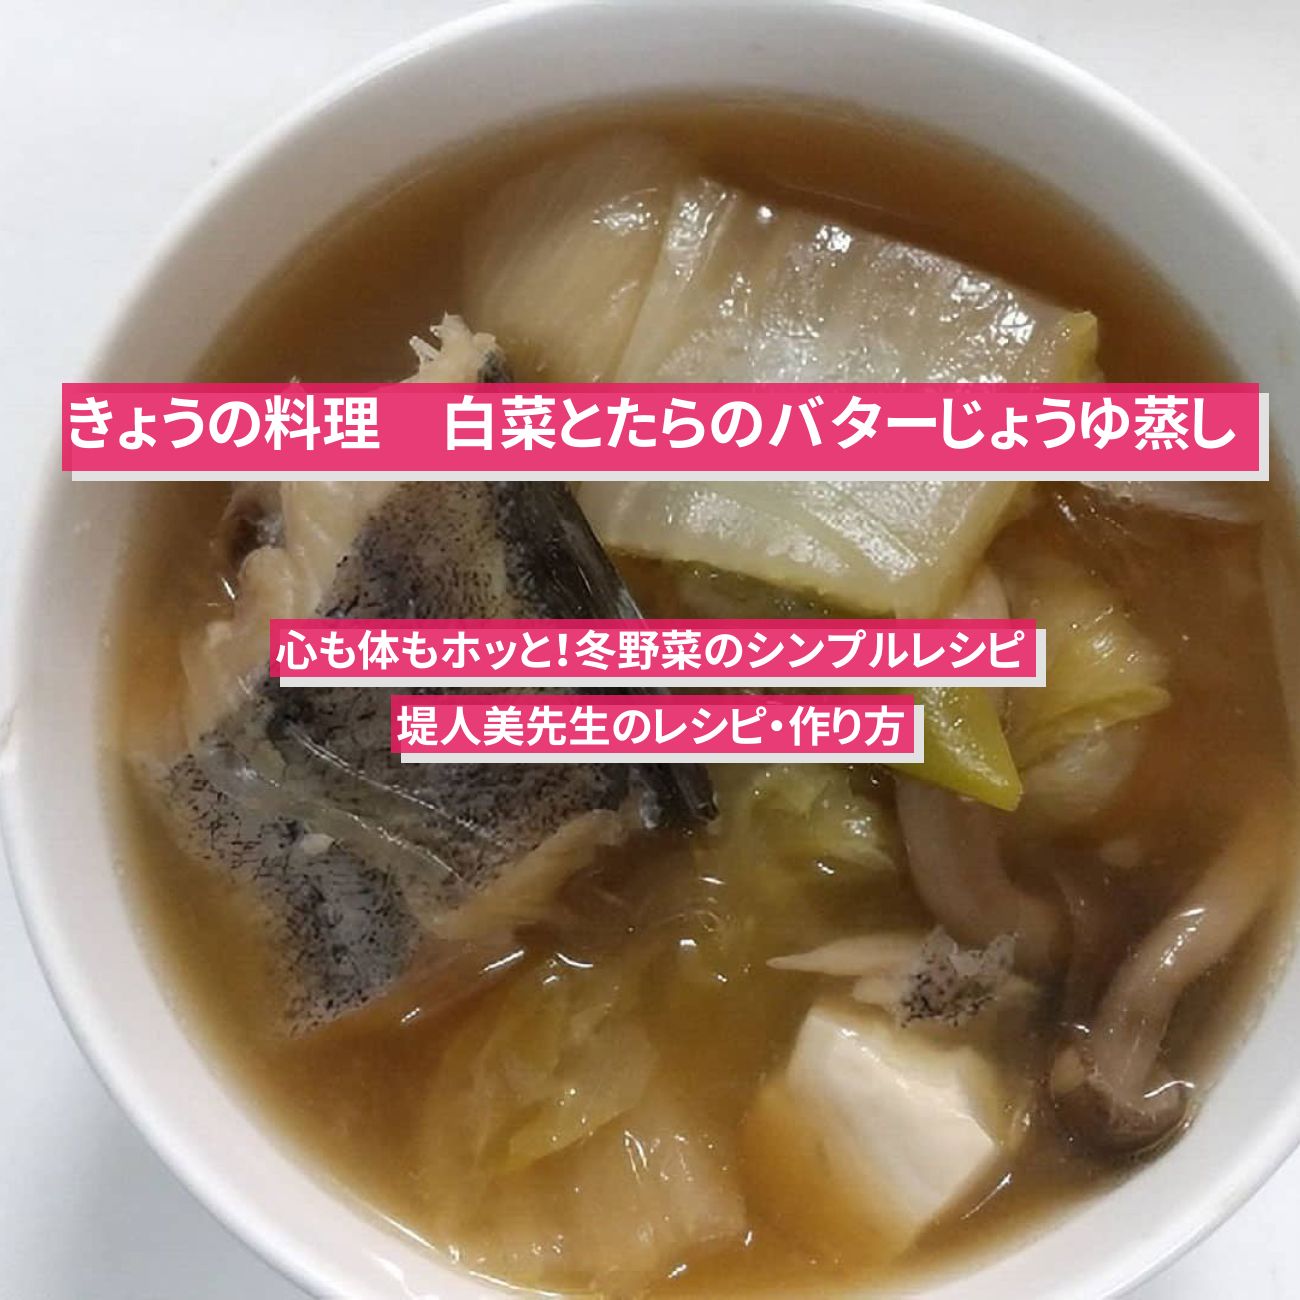 【きょうの料理】『白菜とたらのバターじょうゆ蒸し』堤人美先生のレシピ・作り方